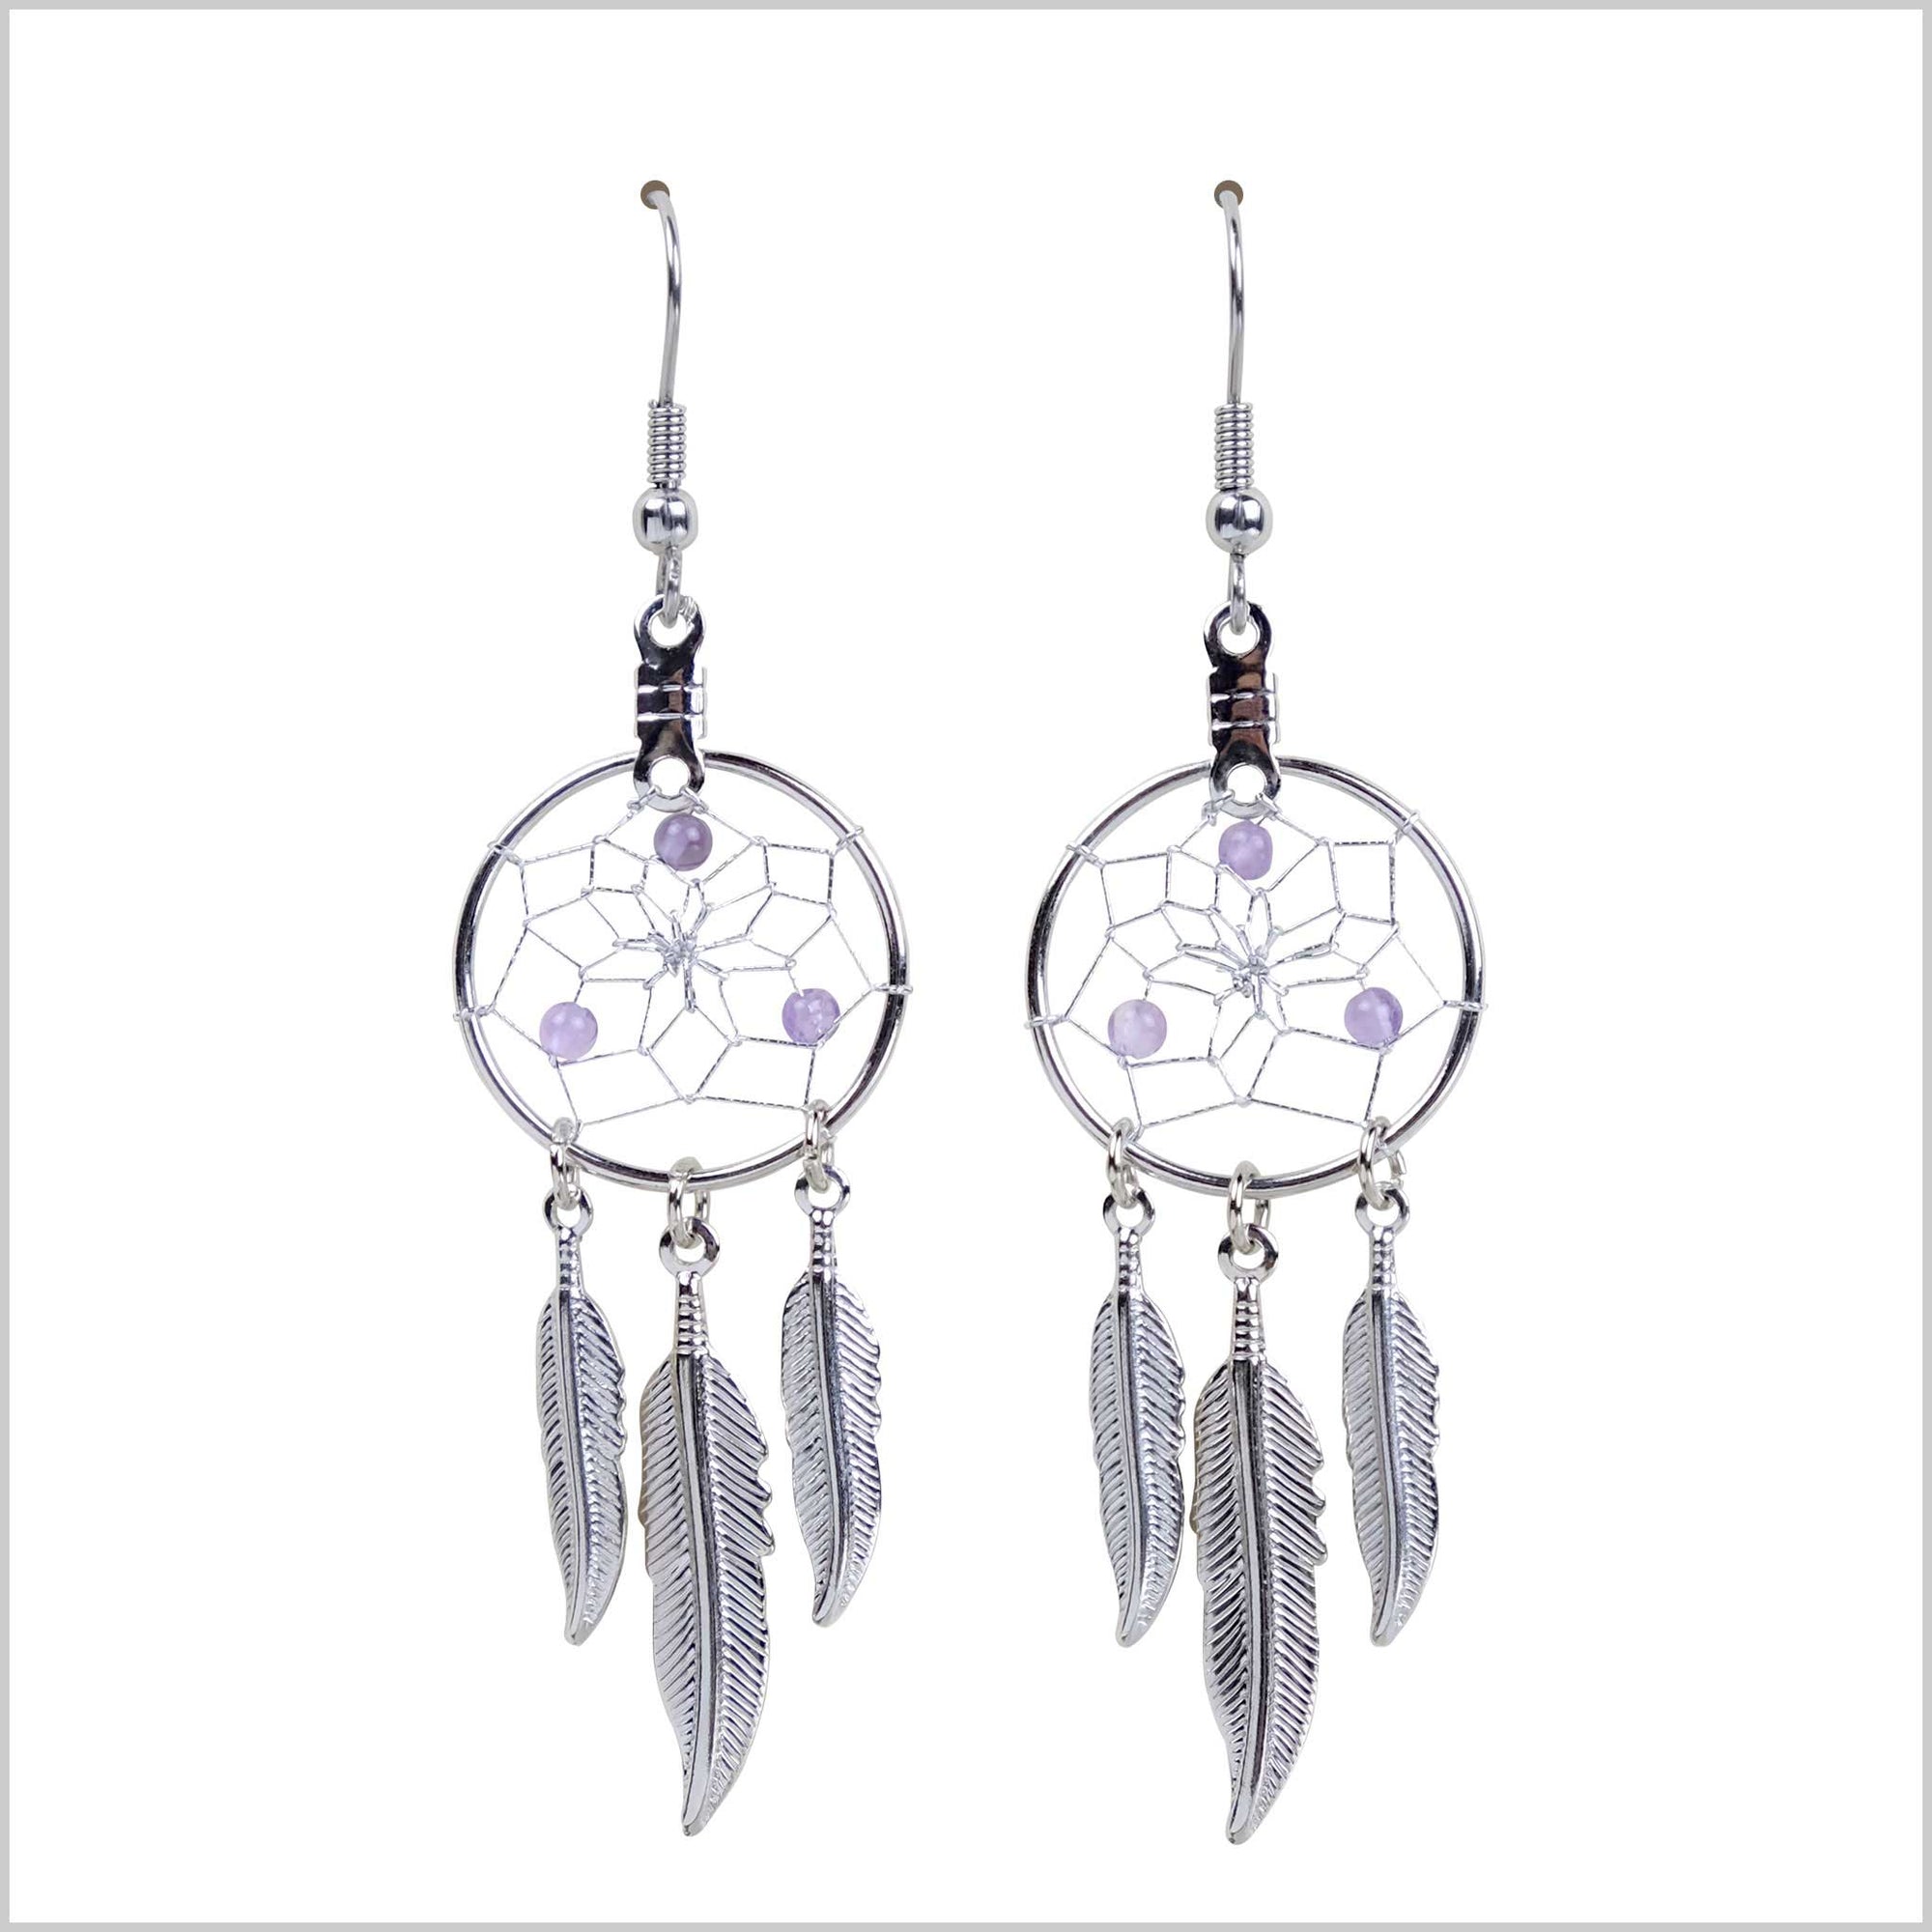 Earrings Birthstone "February-Amethyst" Dream Catcher Jewellery